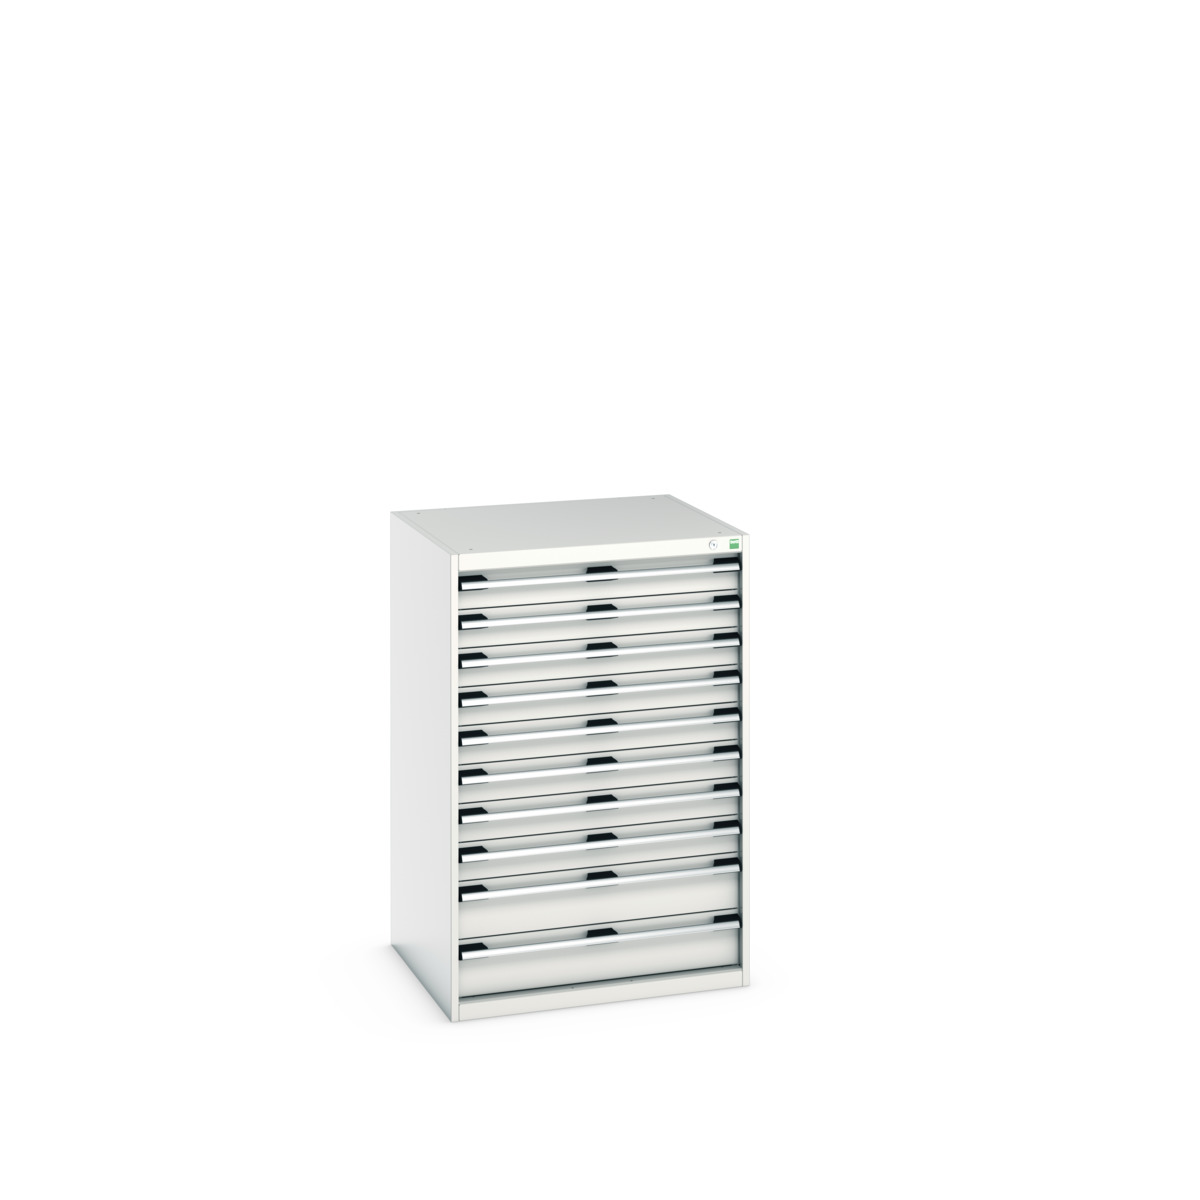 40028037.16V - cubio drawer cabinet